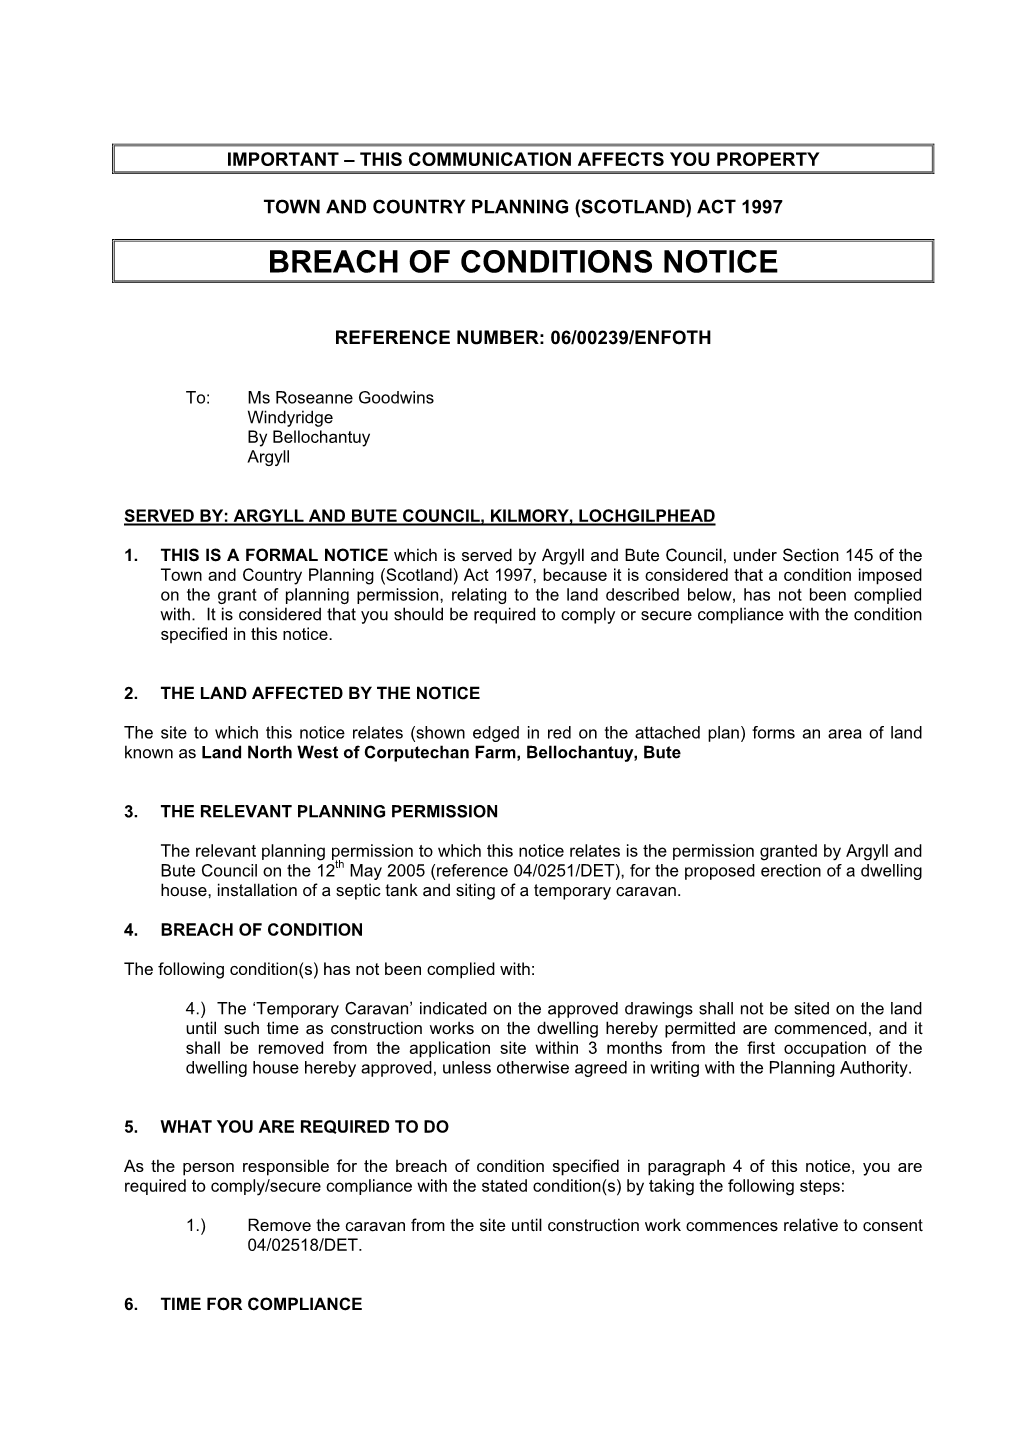 Breach of Conditions Notice